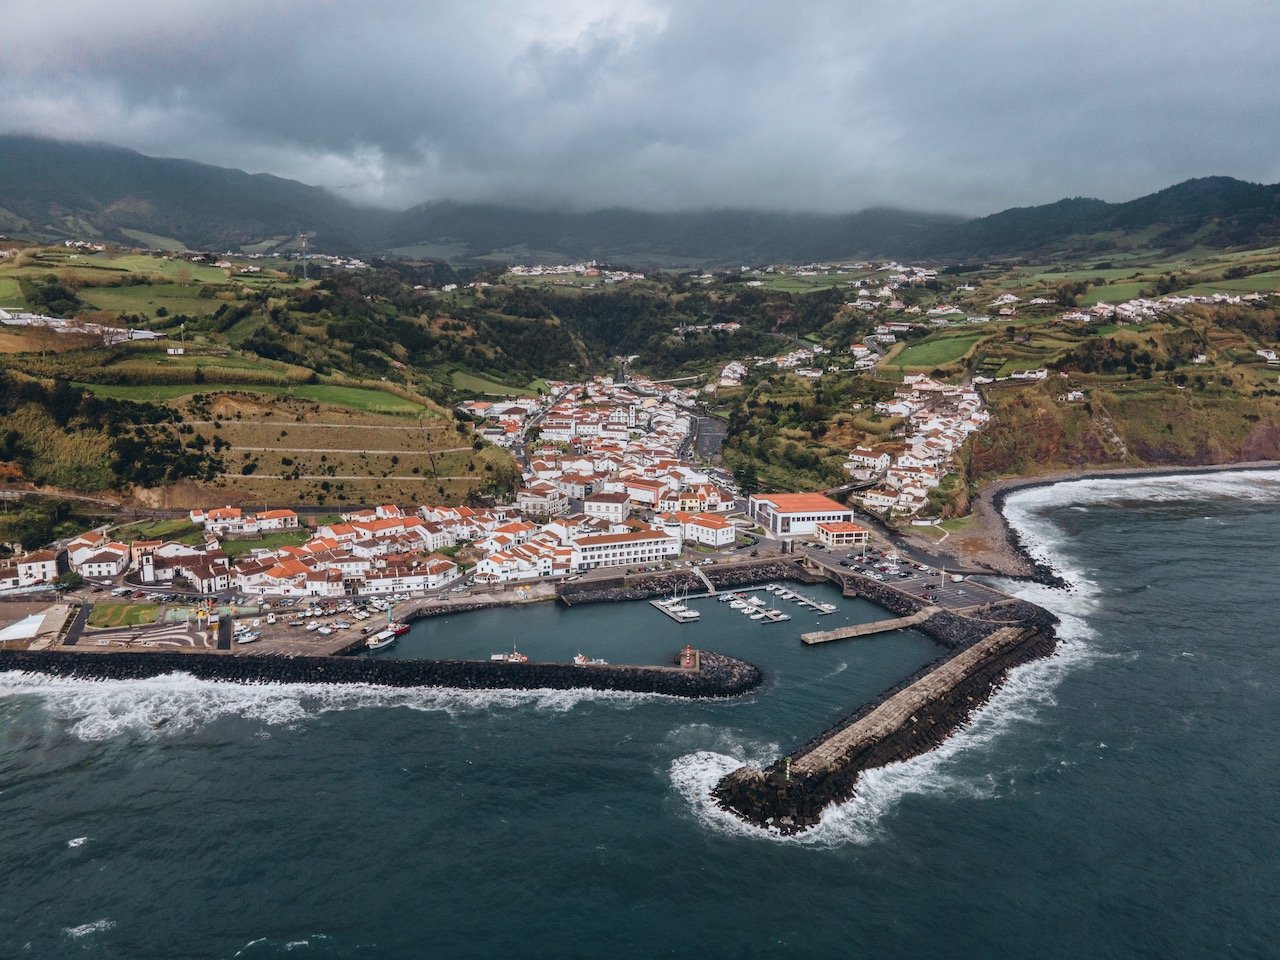   Povoação, São Miguel, the Azores (ISO 100, 4.5 mm,  f /2.8, 1/60 s)  